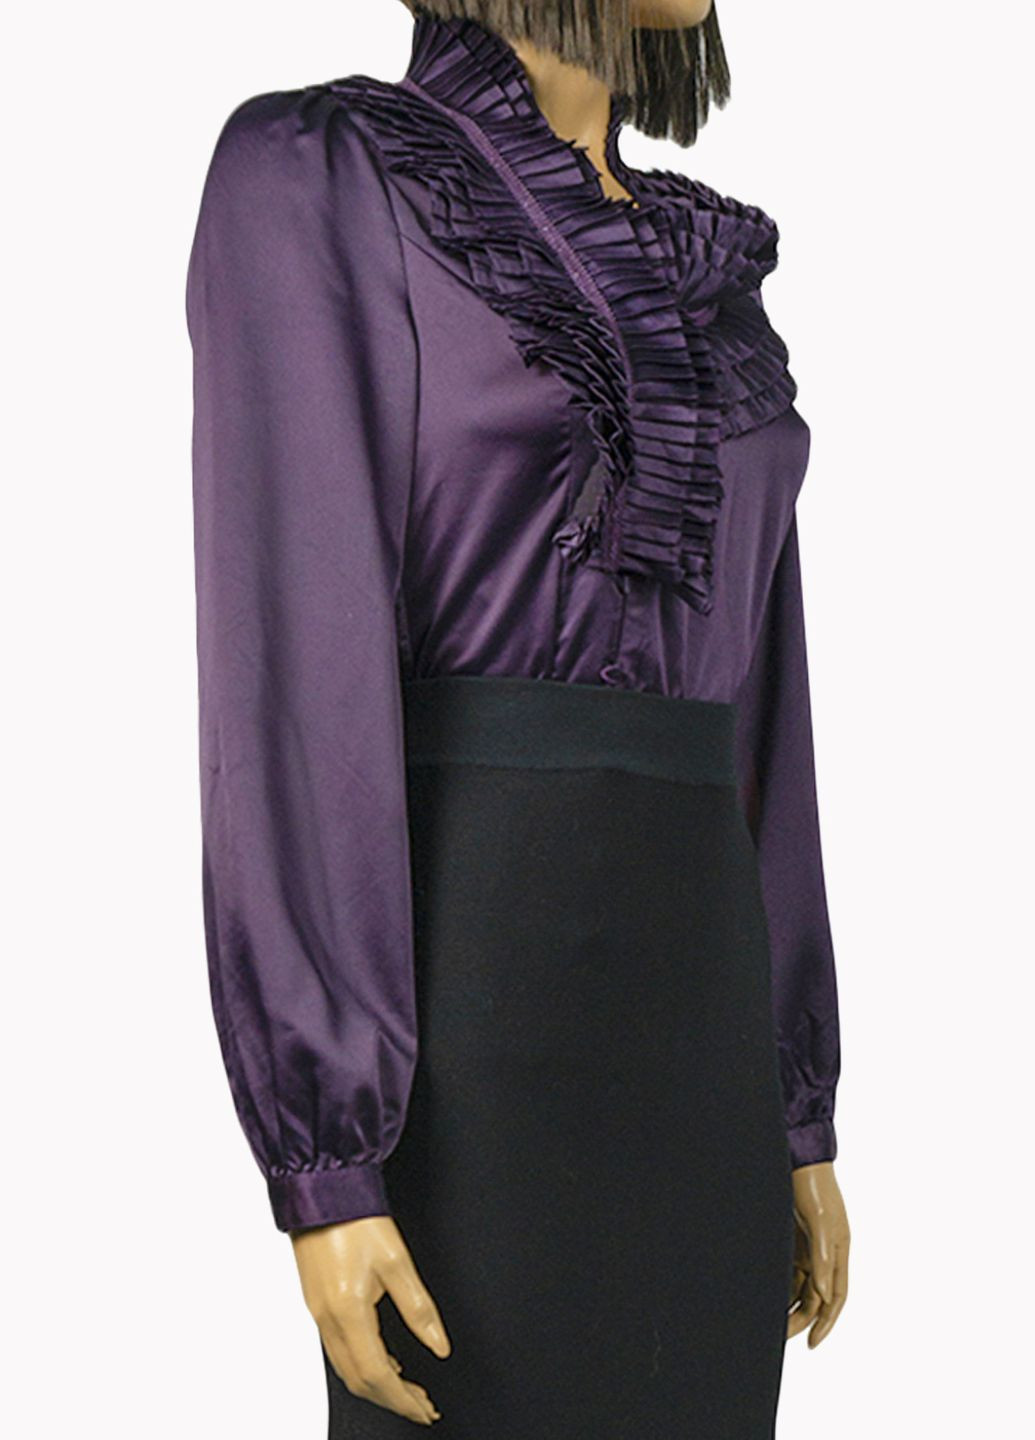 Фиолетовая демисезонная женская блуза с рюшами lw-116476-3 фиолетовый Lowett